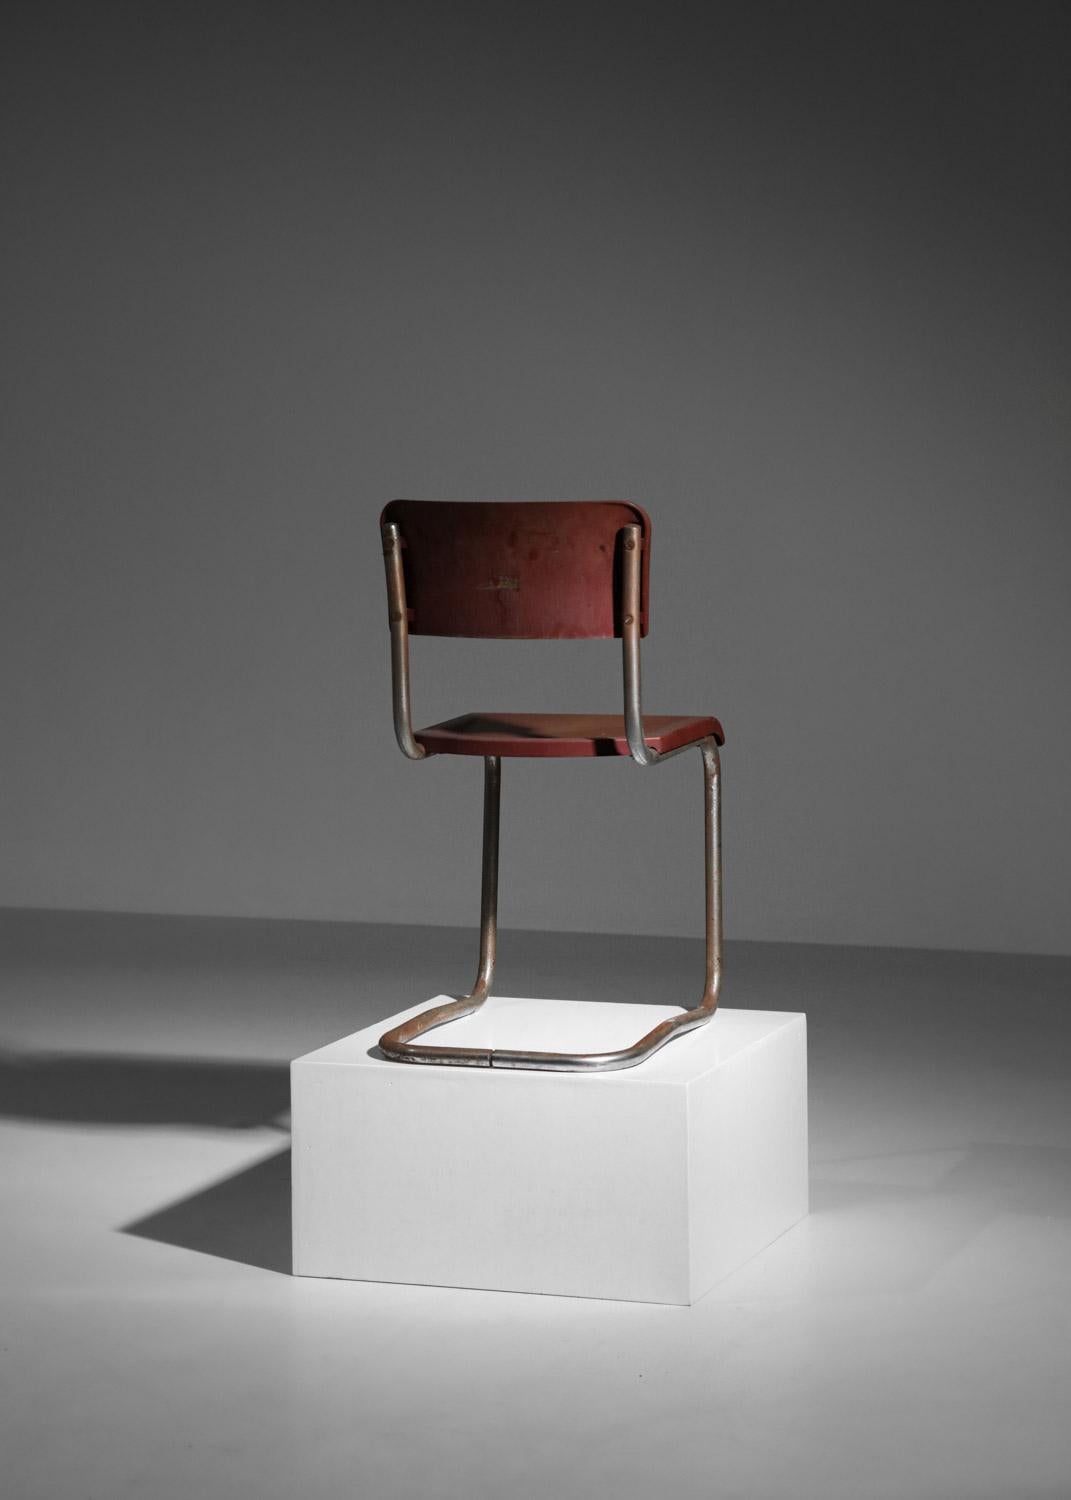 chrome tube bakelite chair in style of Emile Guillot art deco modernist breuer For Sale 2